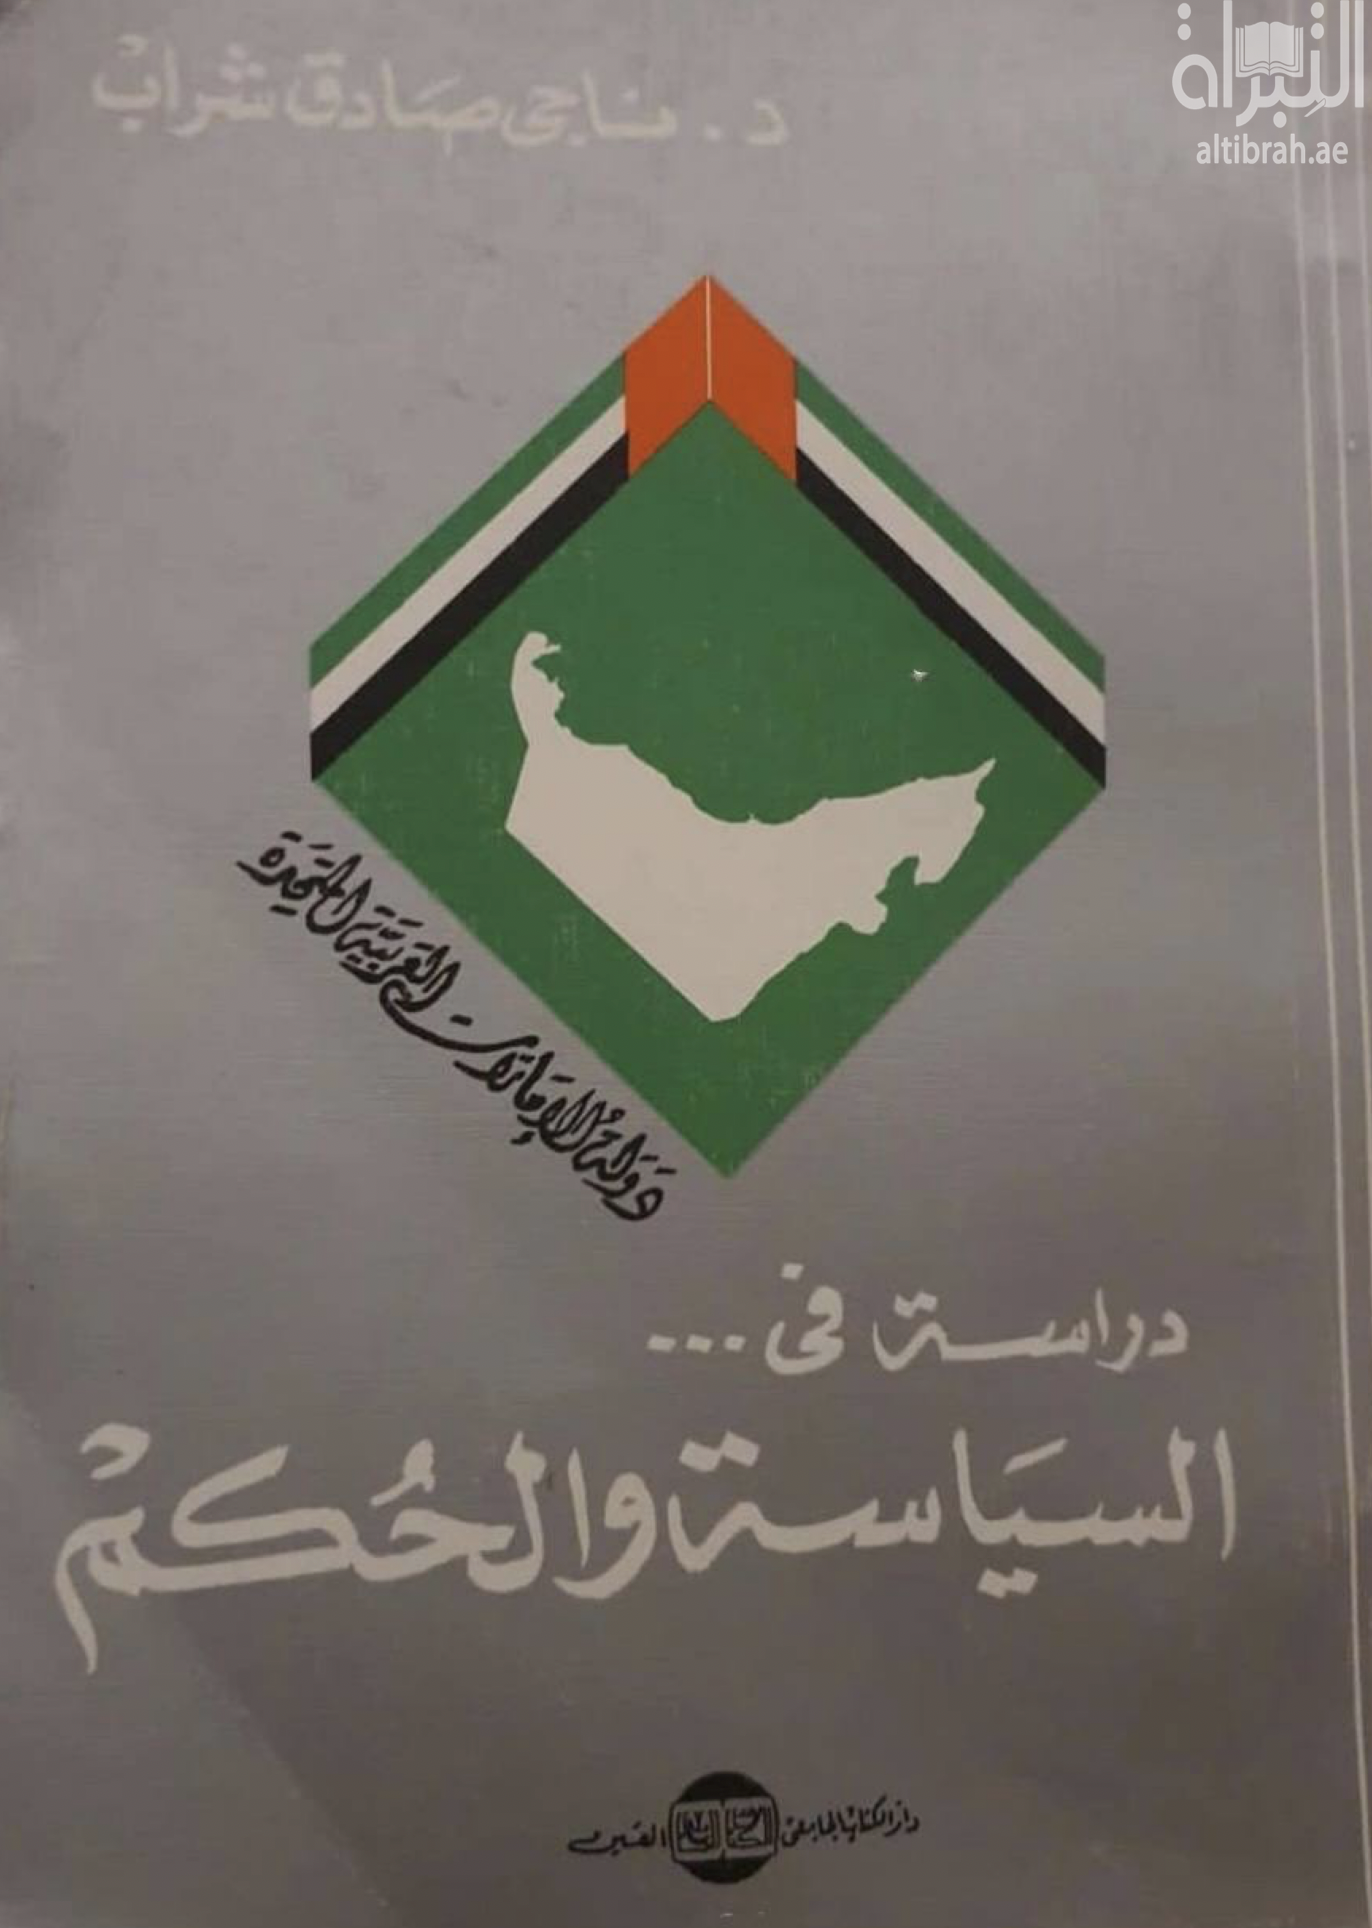 دولة الإمارات العربية المتحدة : دراسة في السياسة والحكم